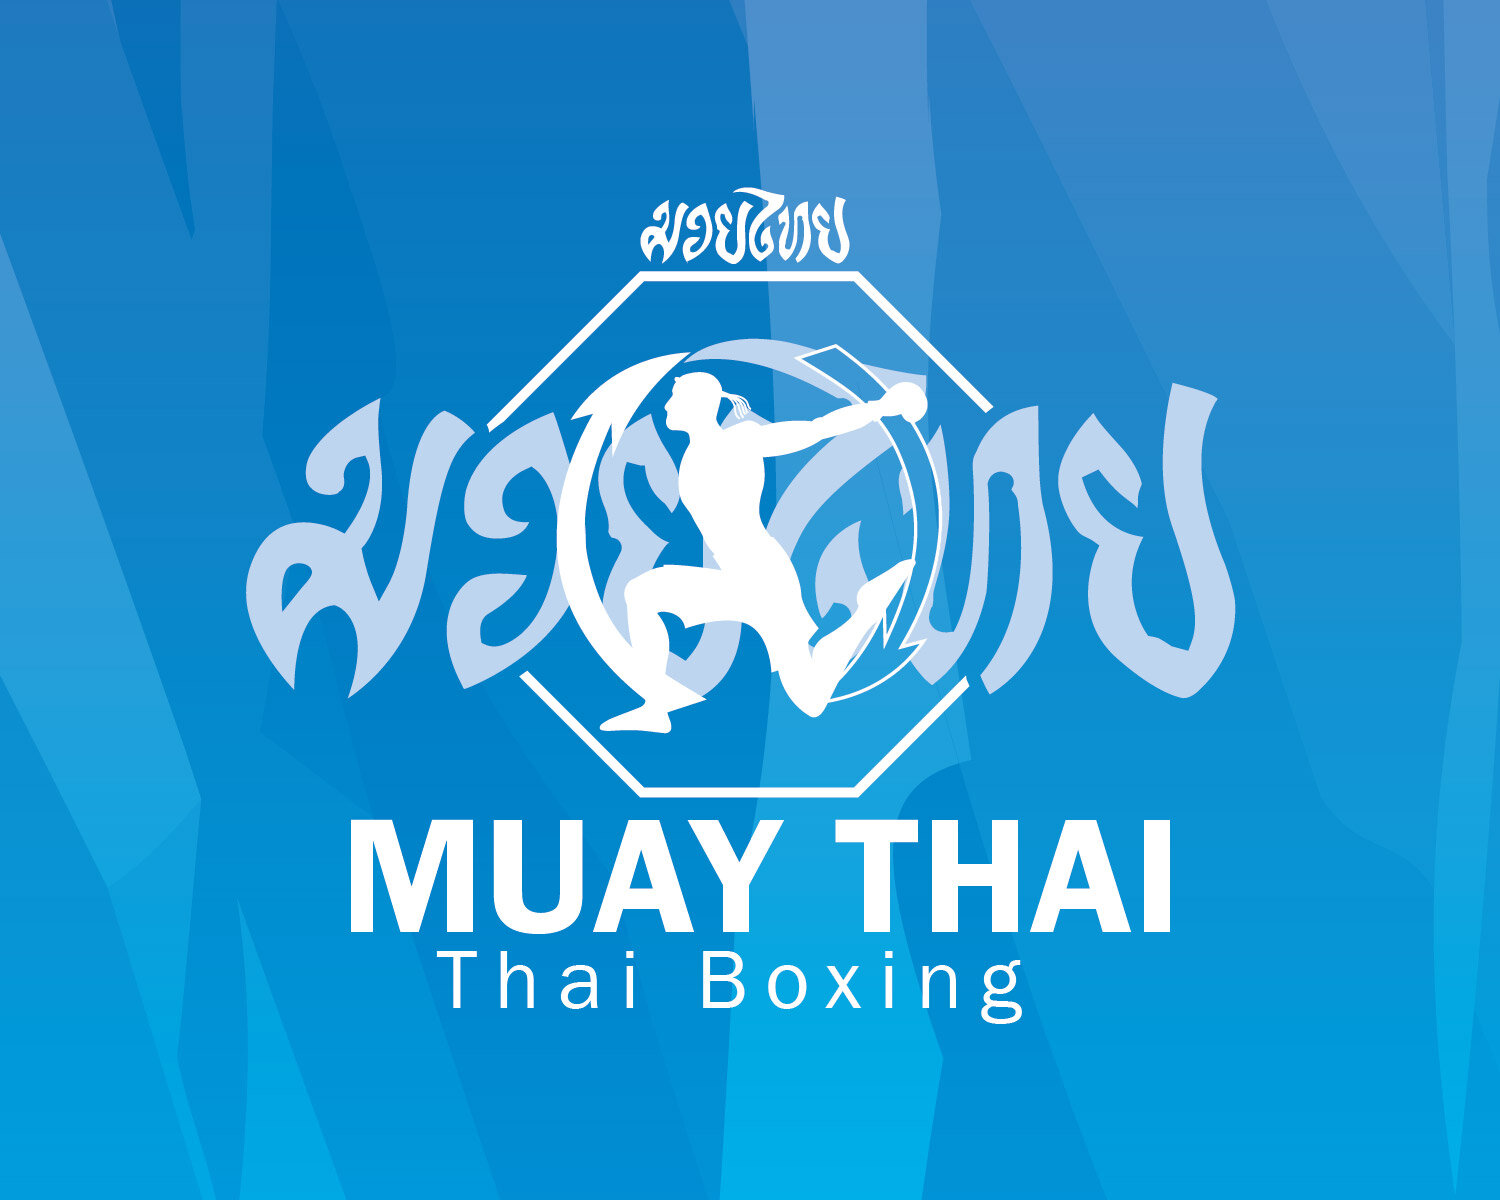 Muay Thai - Thai Boxing - FMMA Barbados